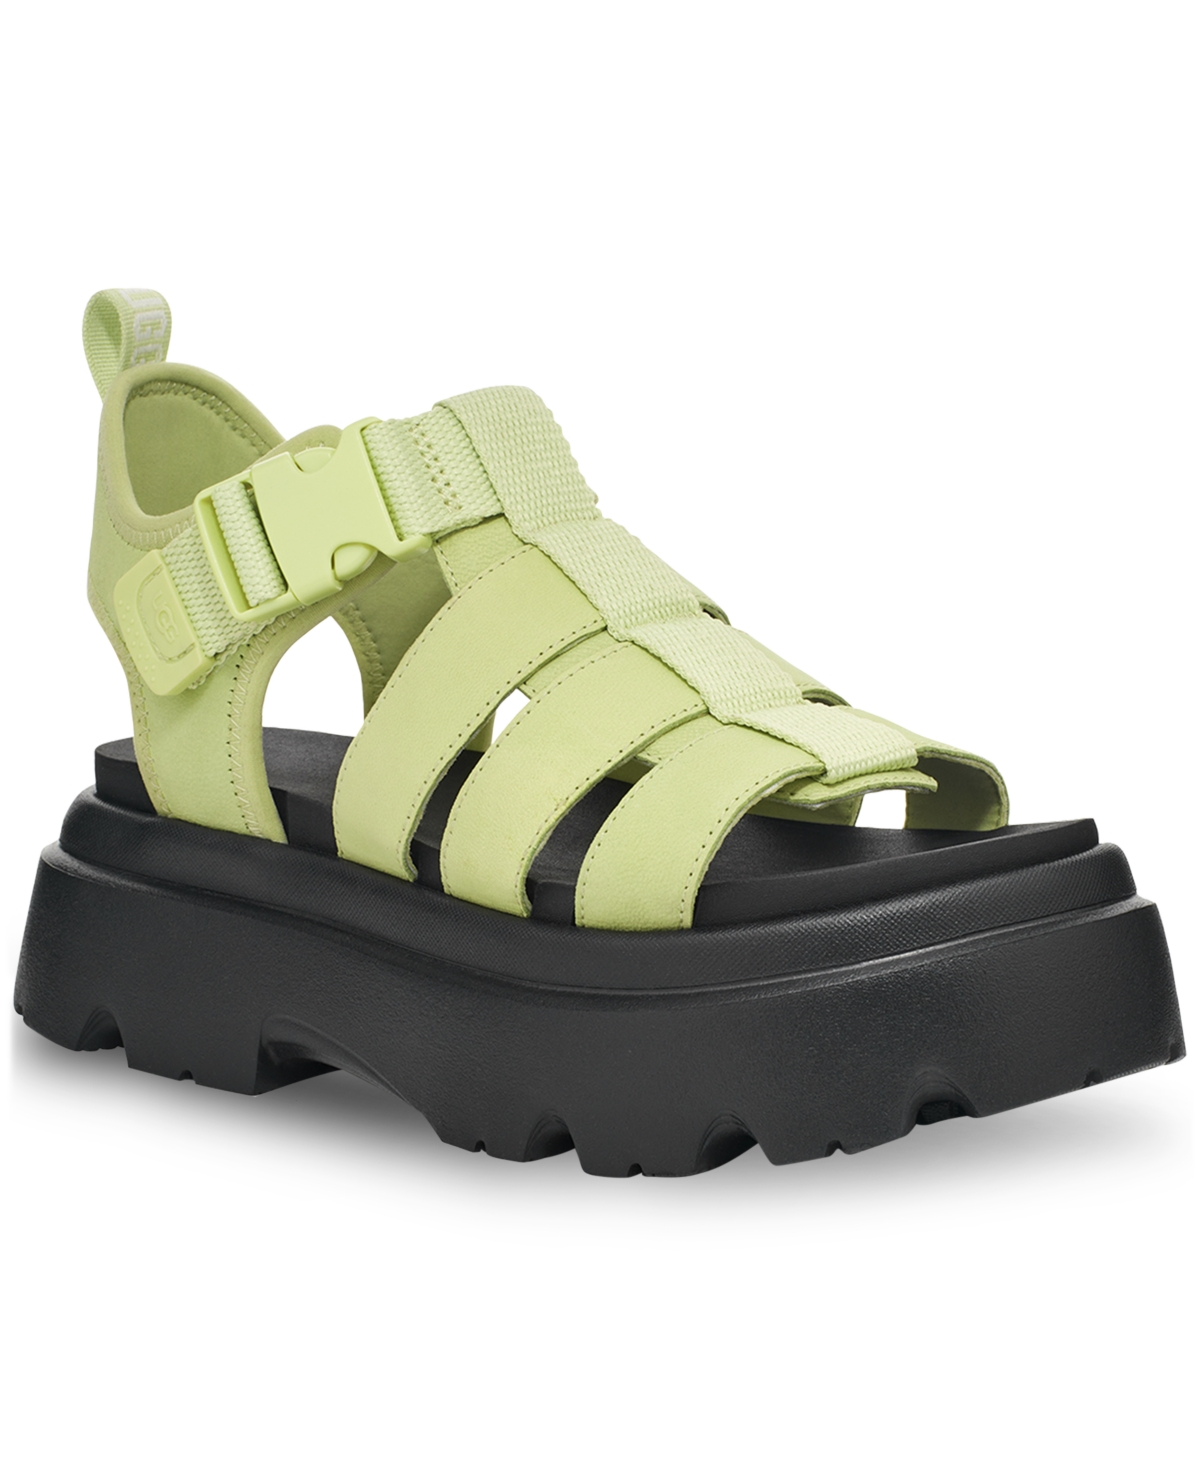 Shop Ugg Women's Cora Buckled Strappy Platform Sandals In Caterpillar